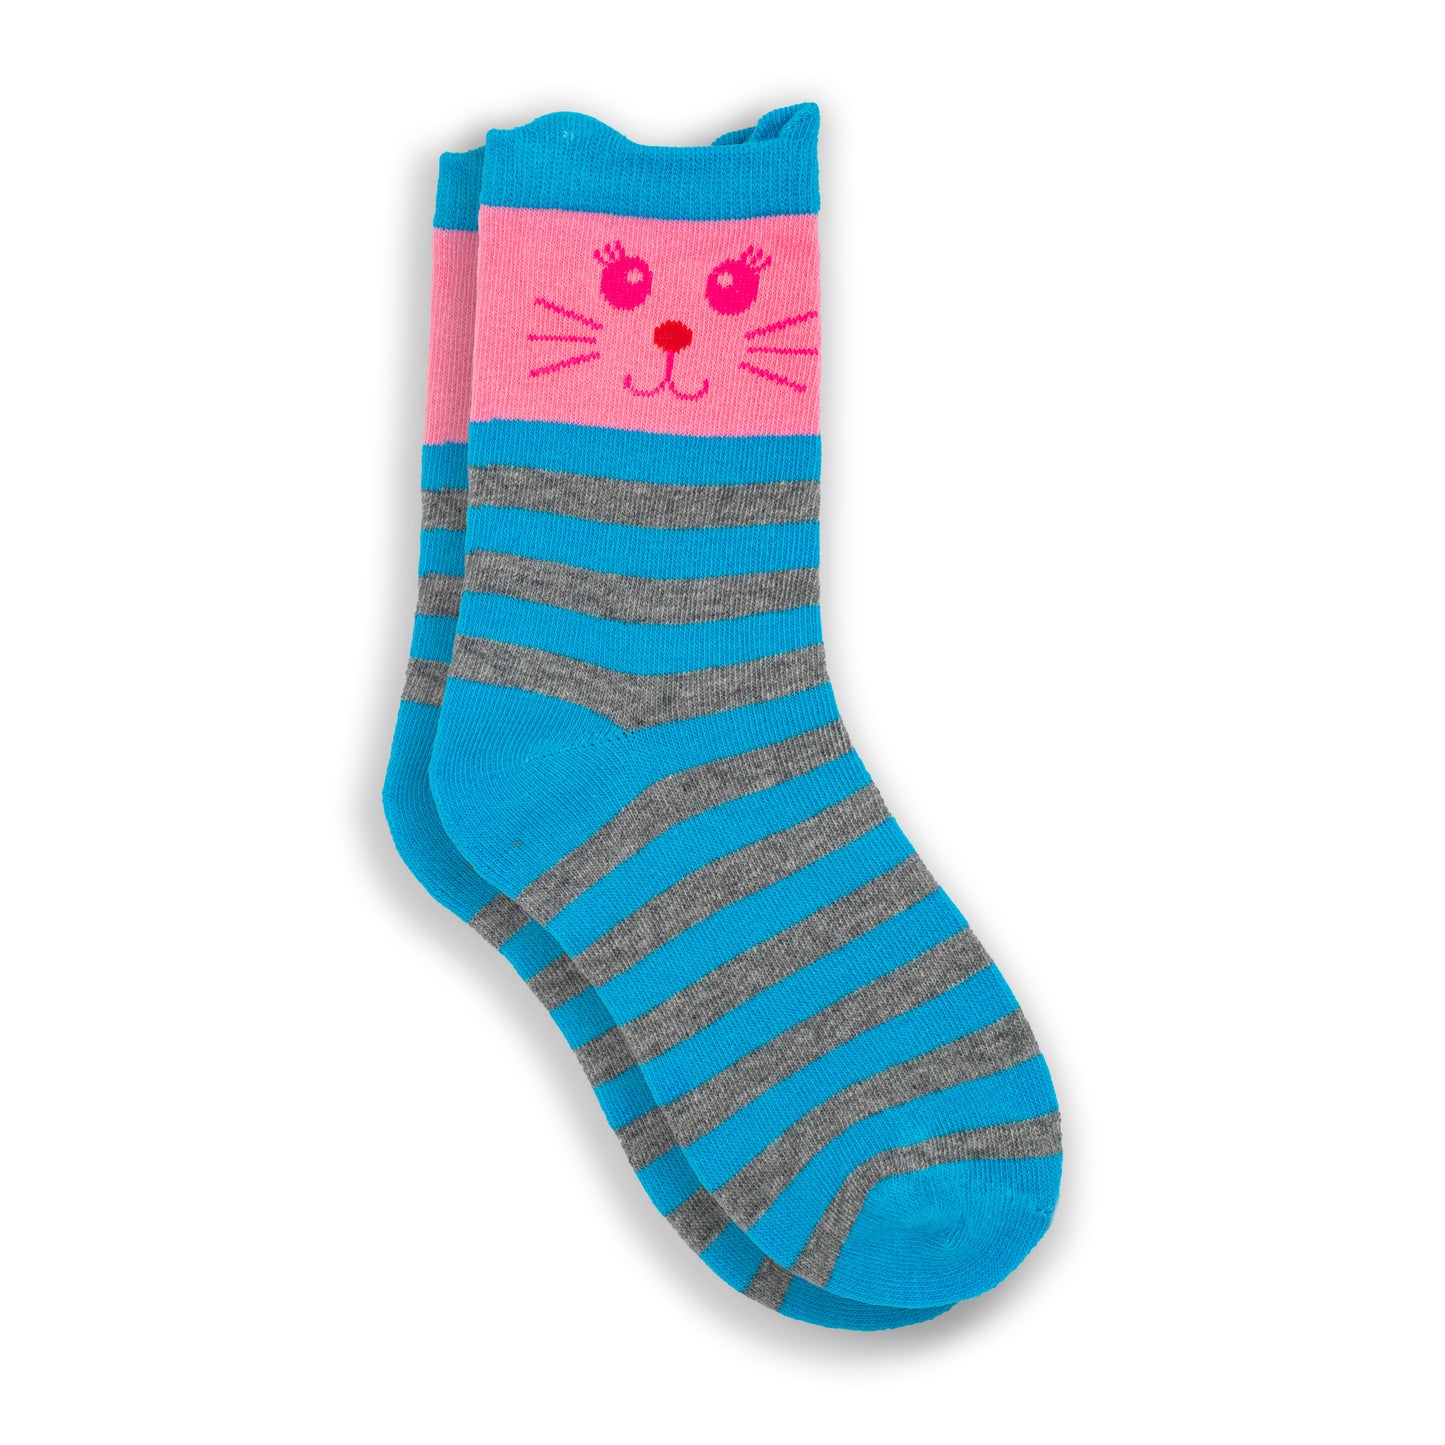 3-Pack Girl's Cat Assorted Crew Socks